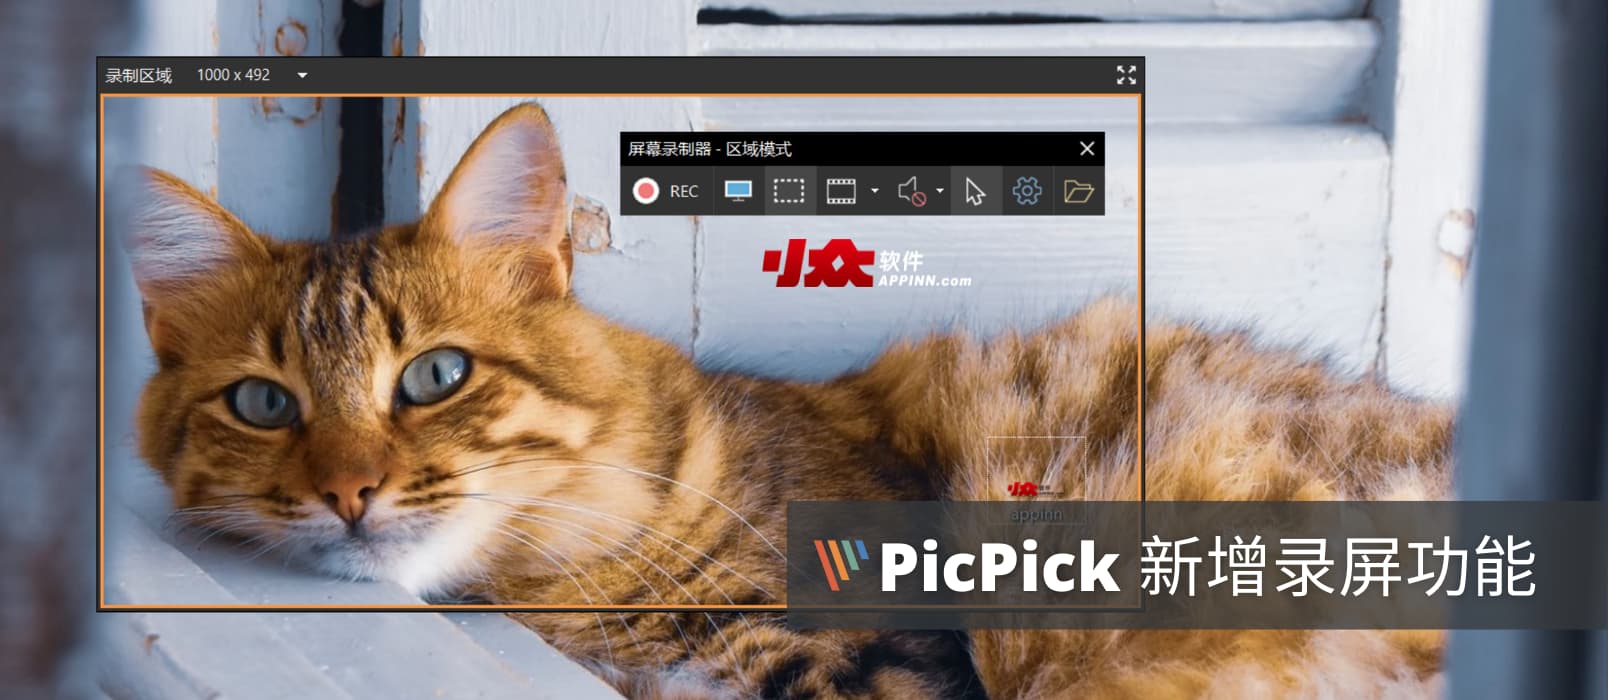 老牌截图工具 PicPick 更新，新增录屏功能，支持 MP4/GIF 格式